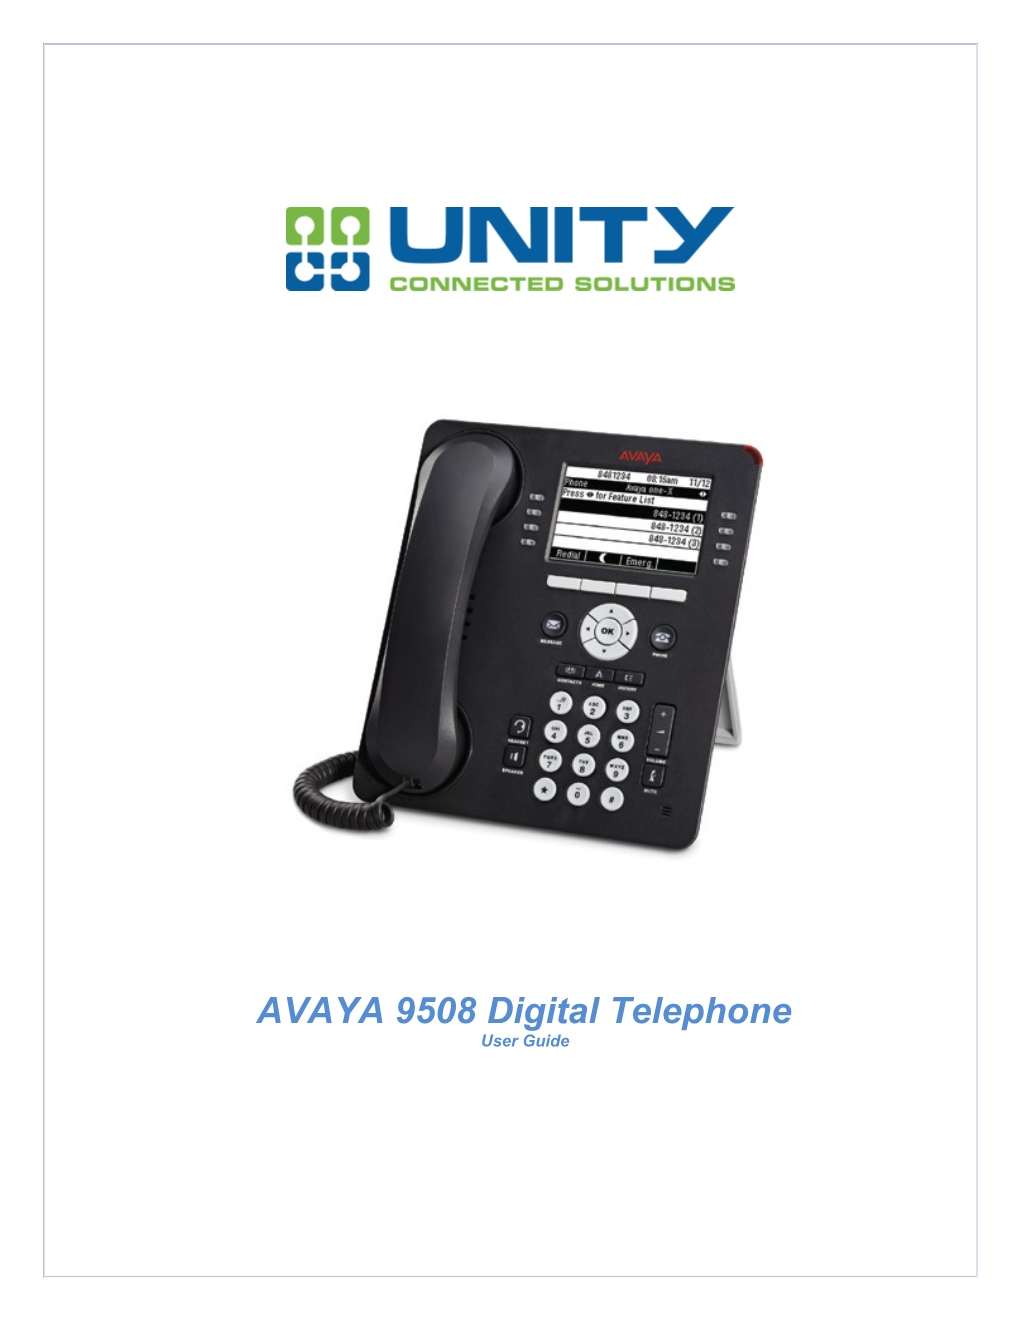 AVAYA 9508 Digital Telephone